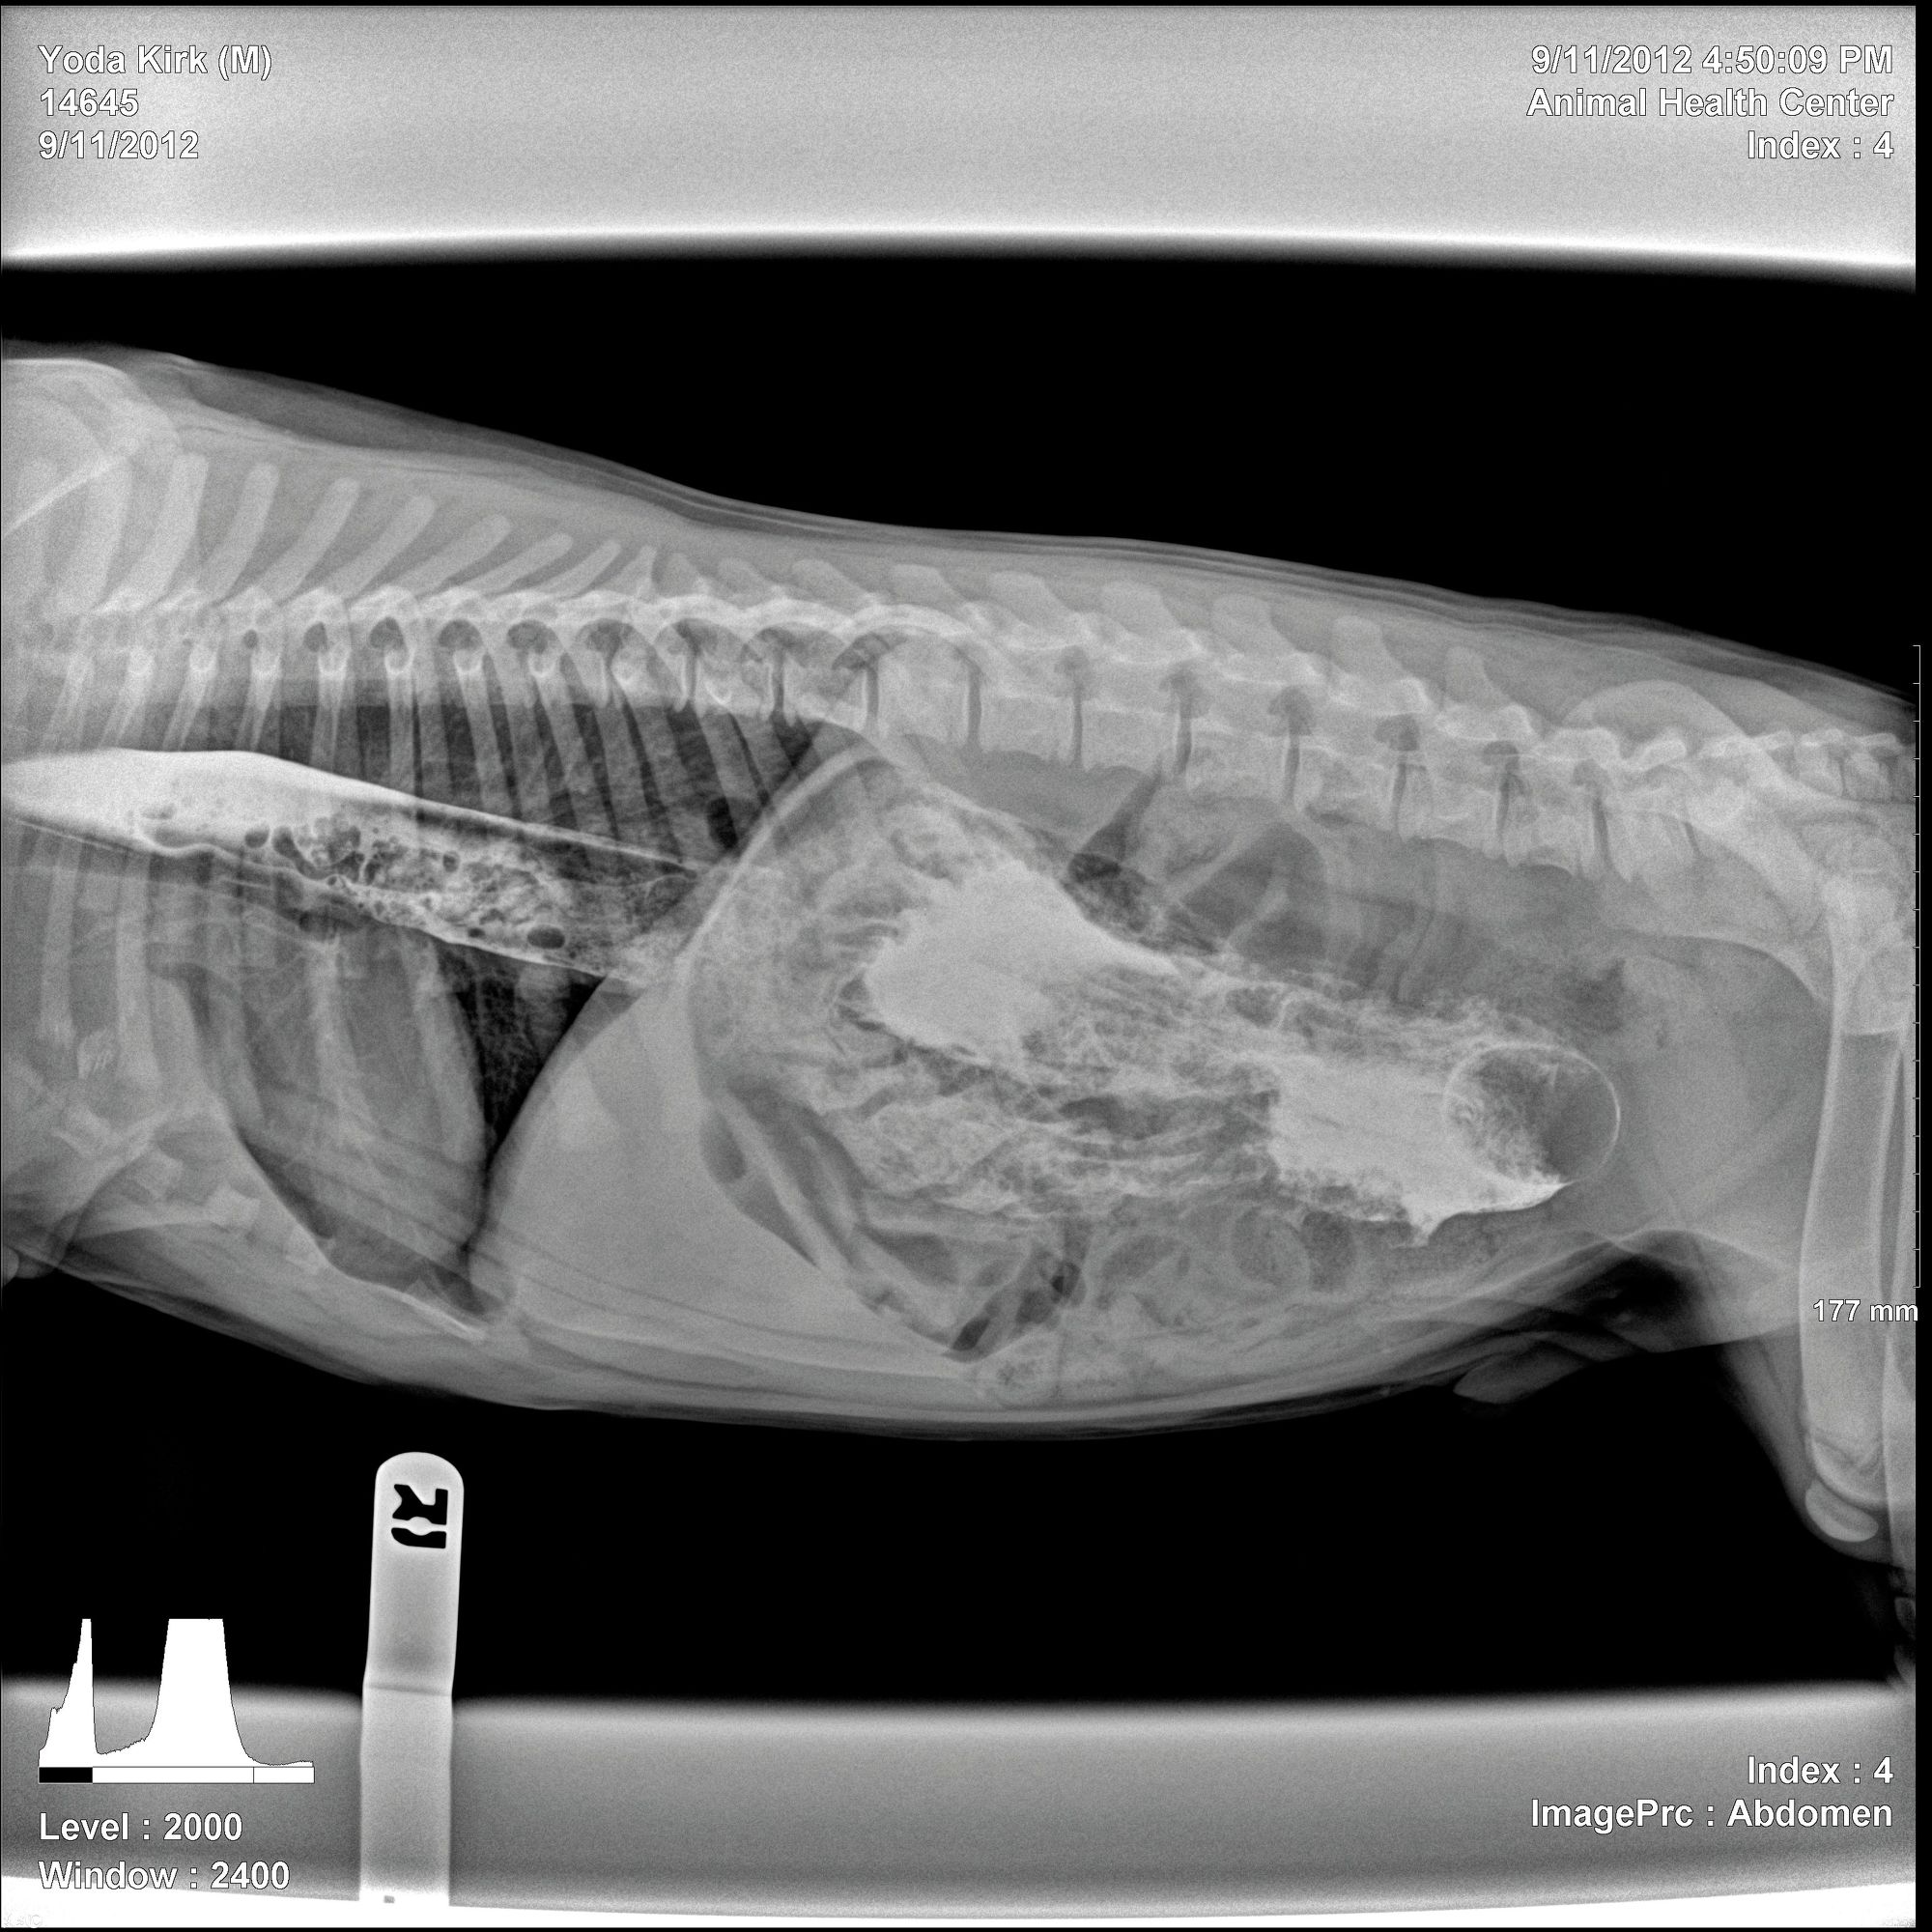 x光照片显示一个棍状的物体出现在一只小狗肚子里.